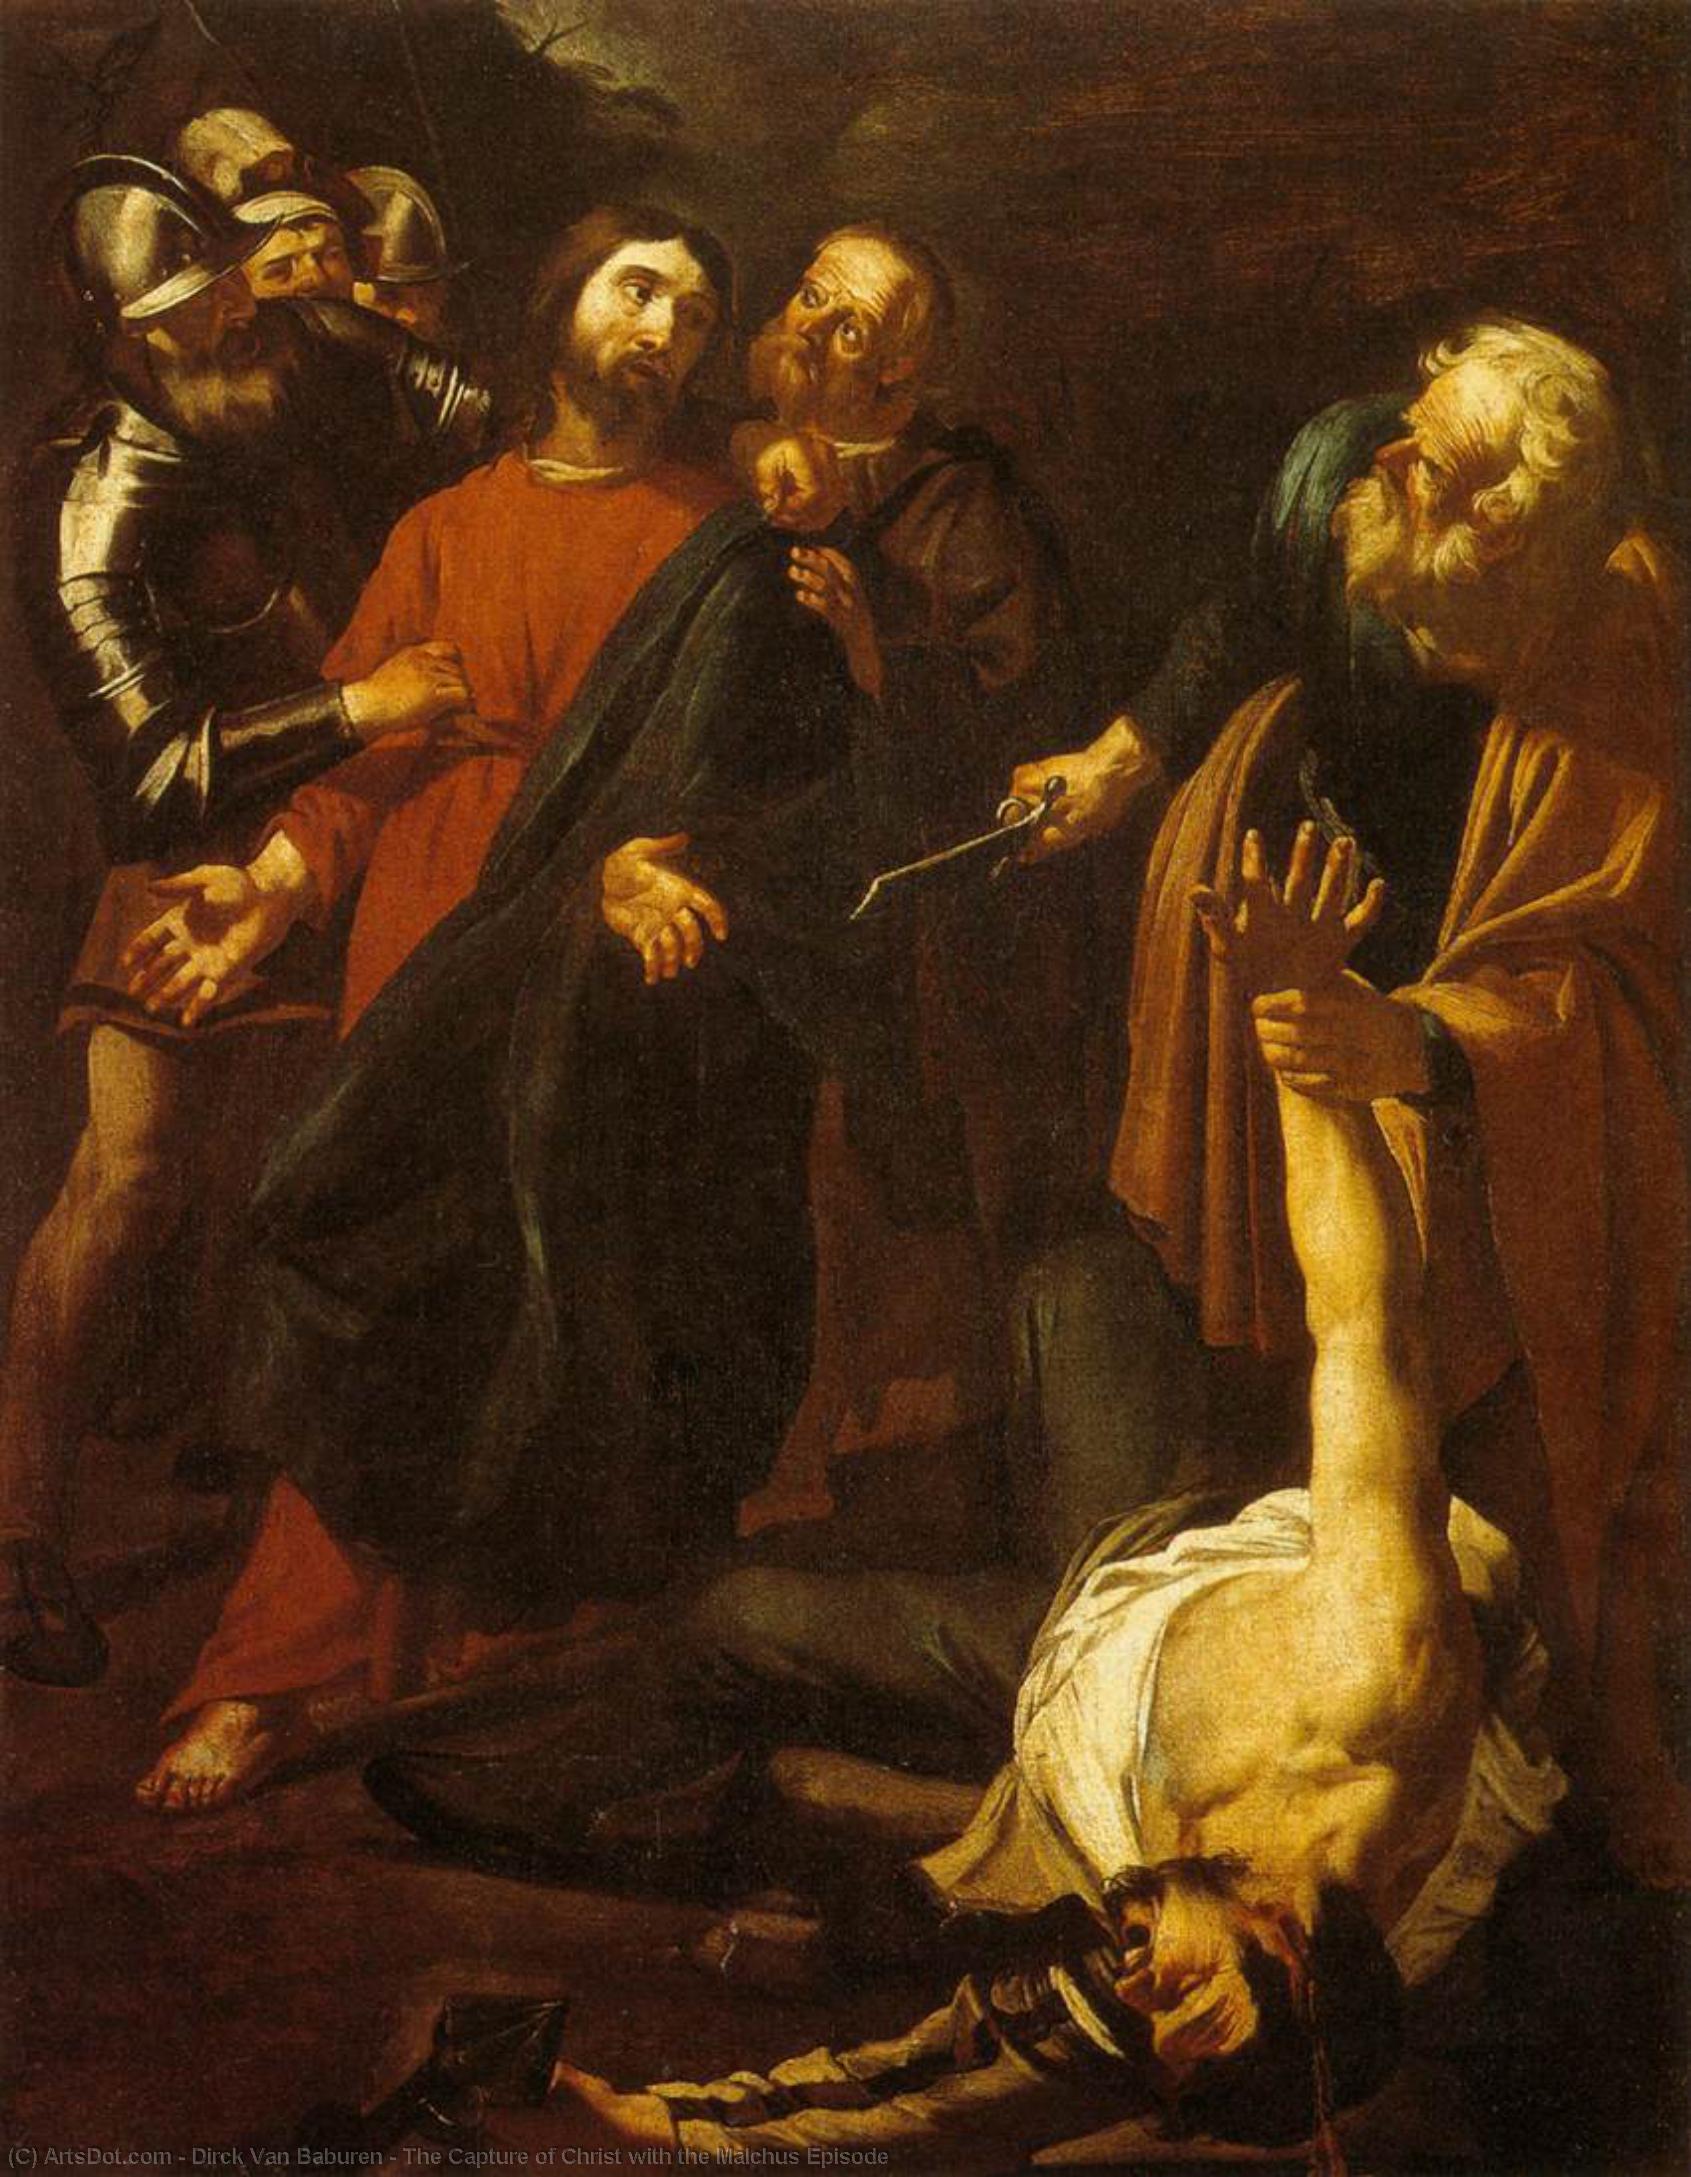 WikiOO.org - Encyclopedia of Fine Arts - Maľba, Artwork Dirck Van Baburen - The Capture of Christ with the Malchus Episode